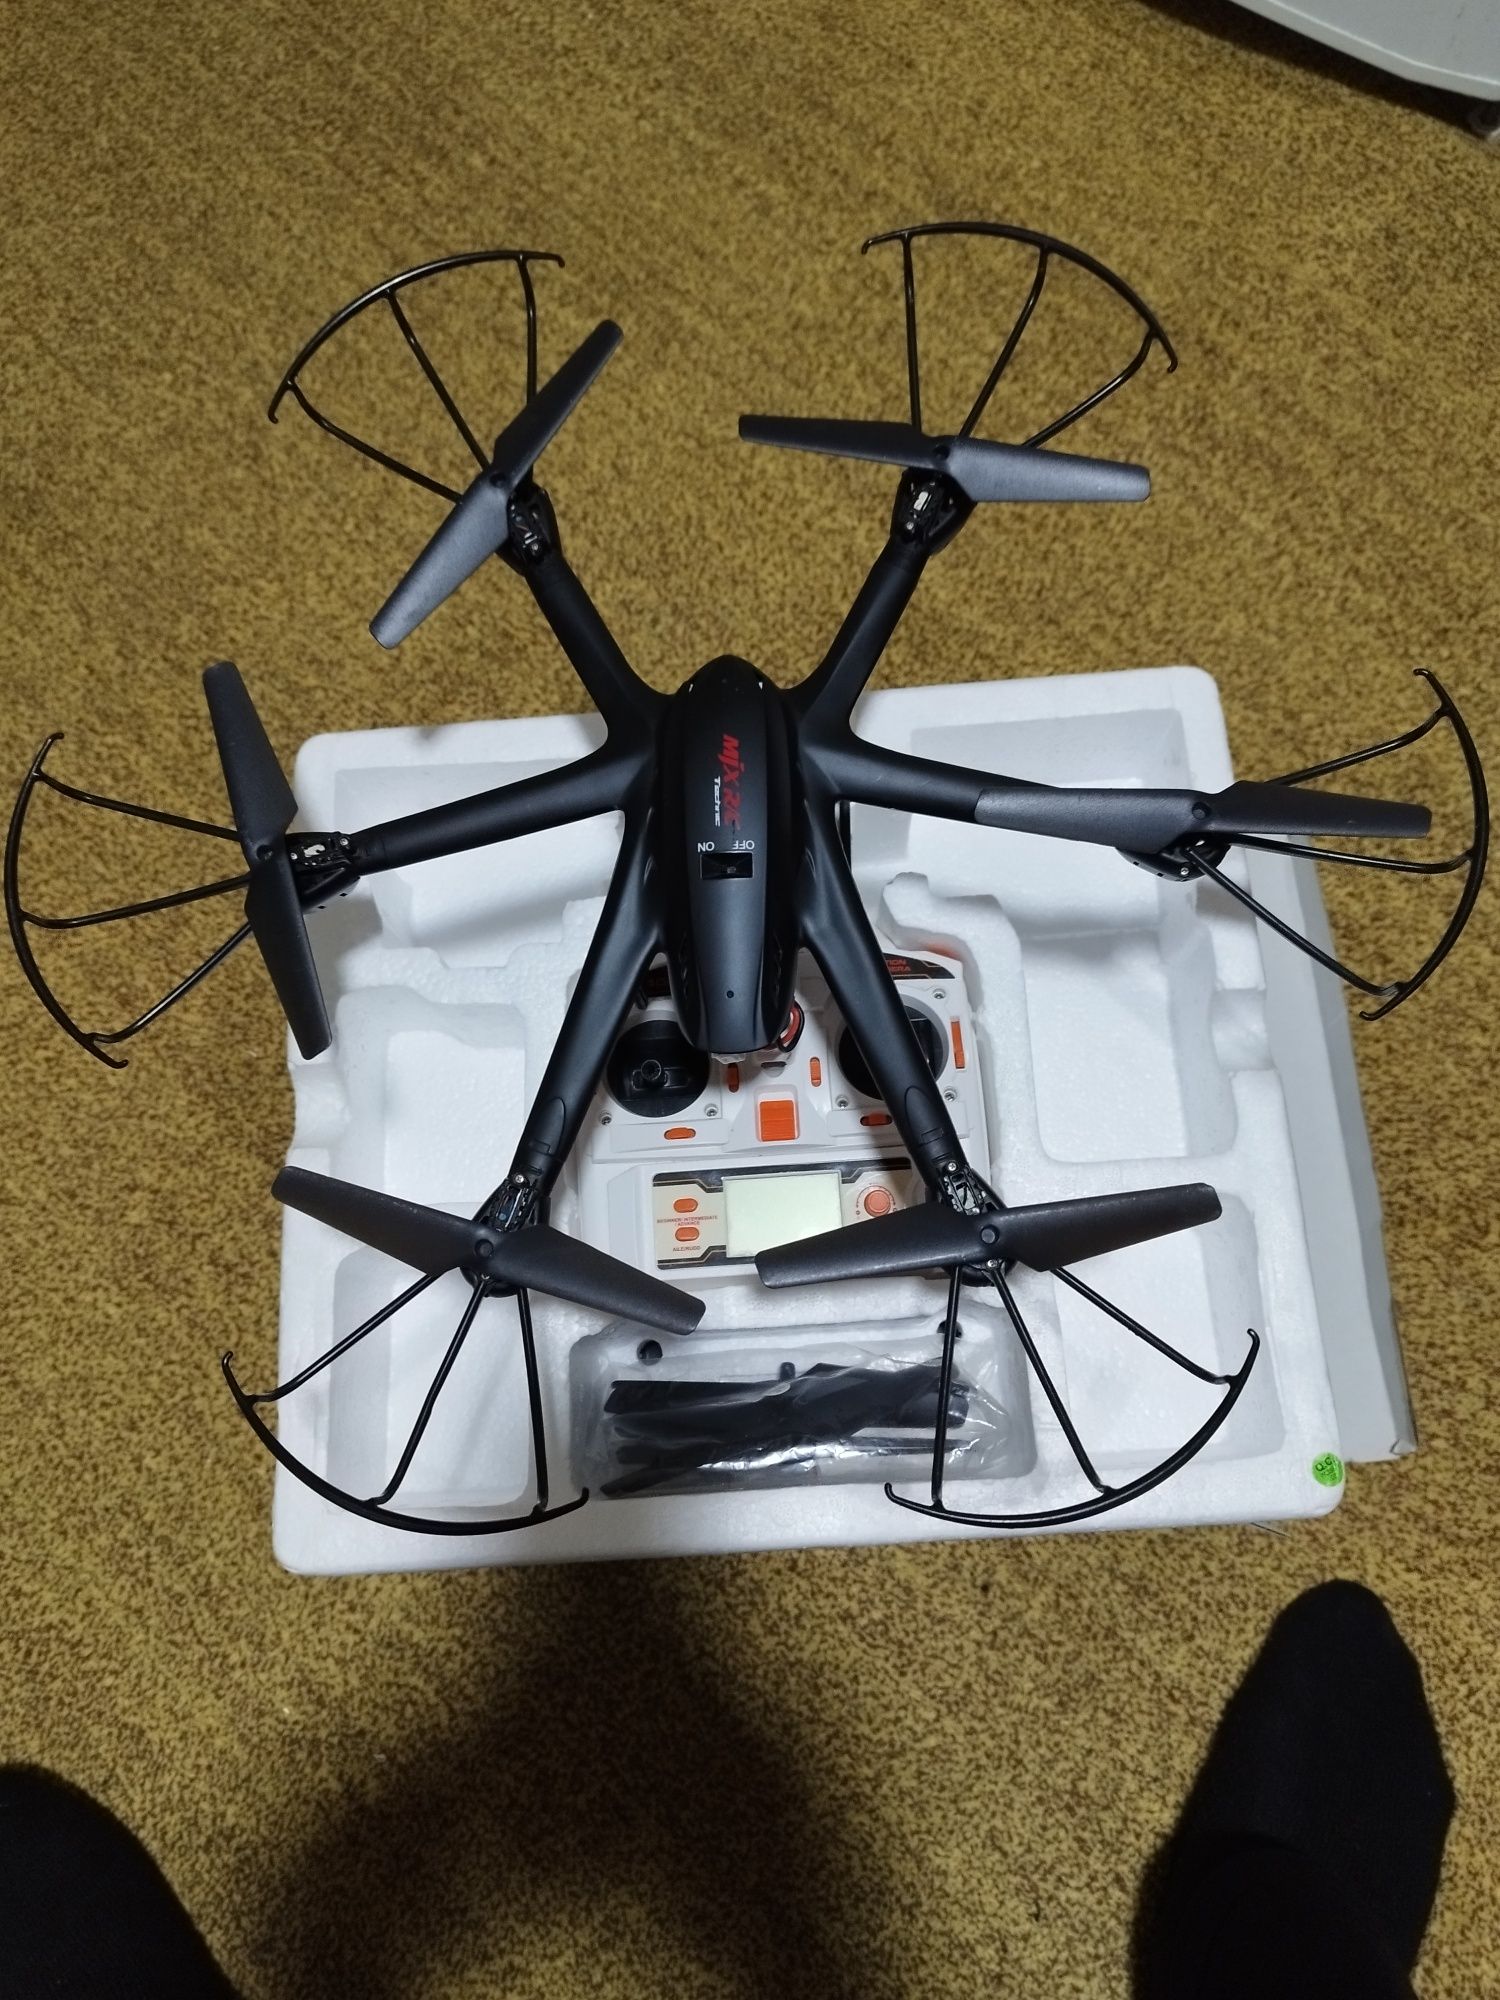 Drona mare cu 6axe MJX X600